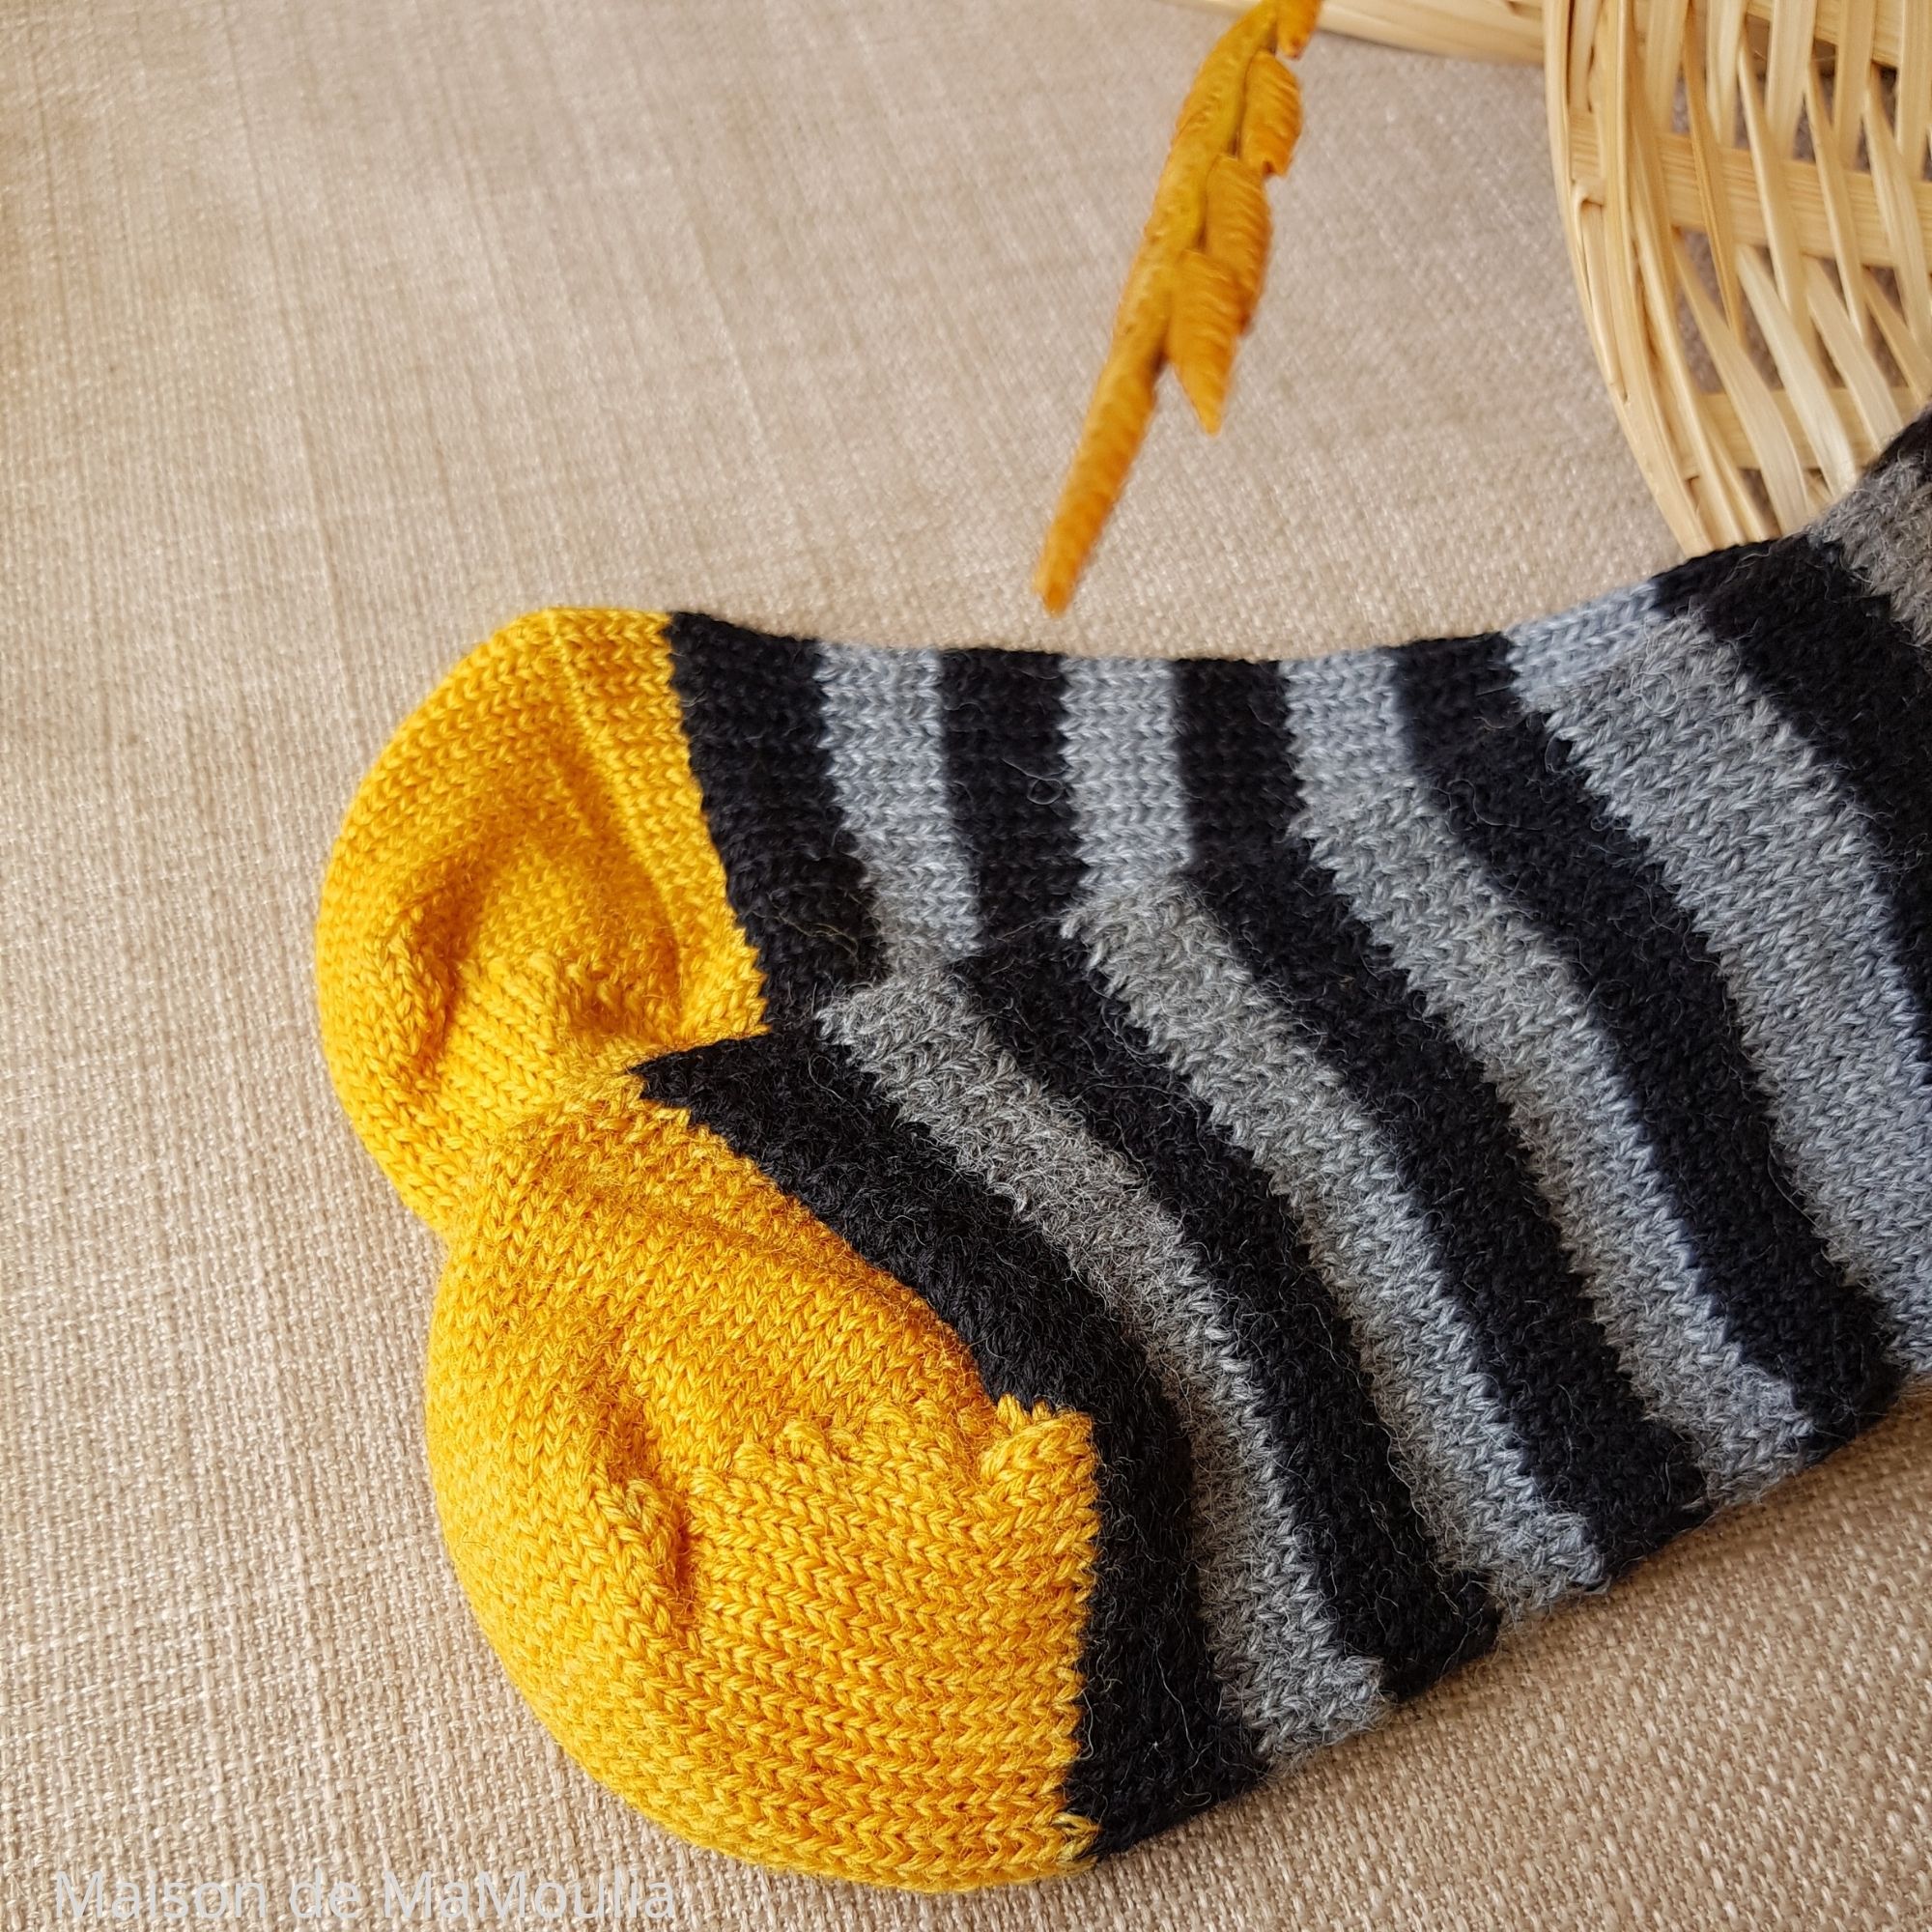 015-chaussettes-chaudes-pure-laine-bio-ecologique-hirsch-natur-bebe-enfant-maison-de-mamoulia-tres-epaisses-rayures-jaune-gris-noir